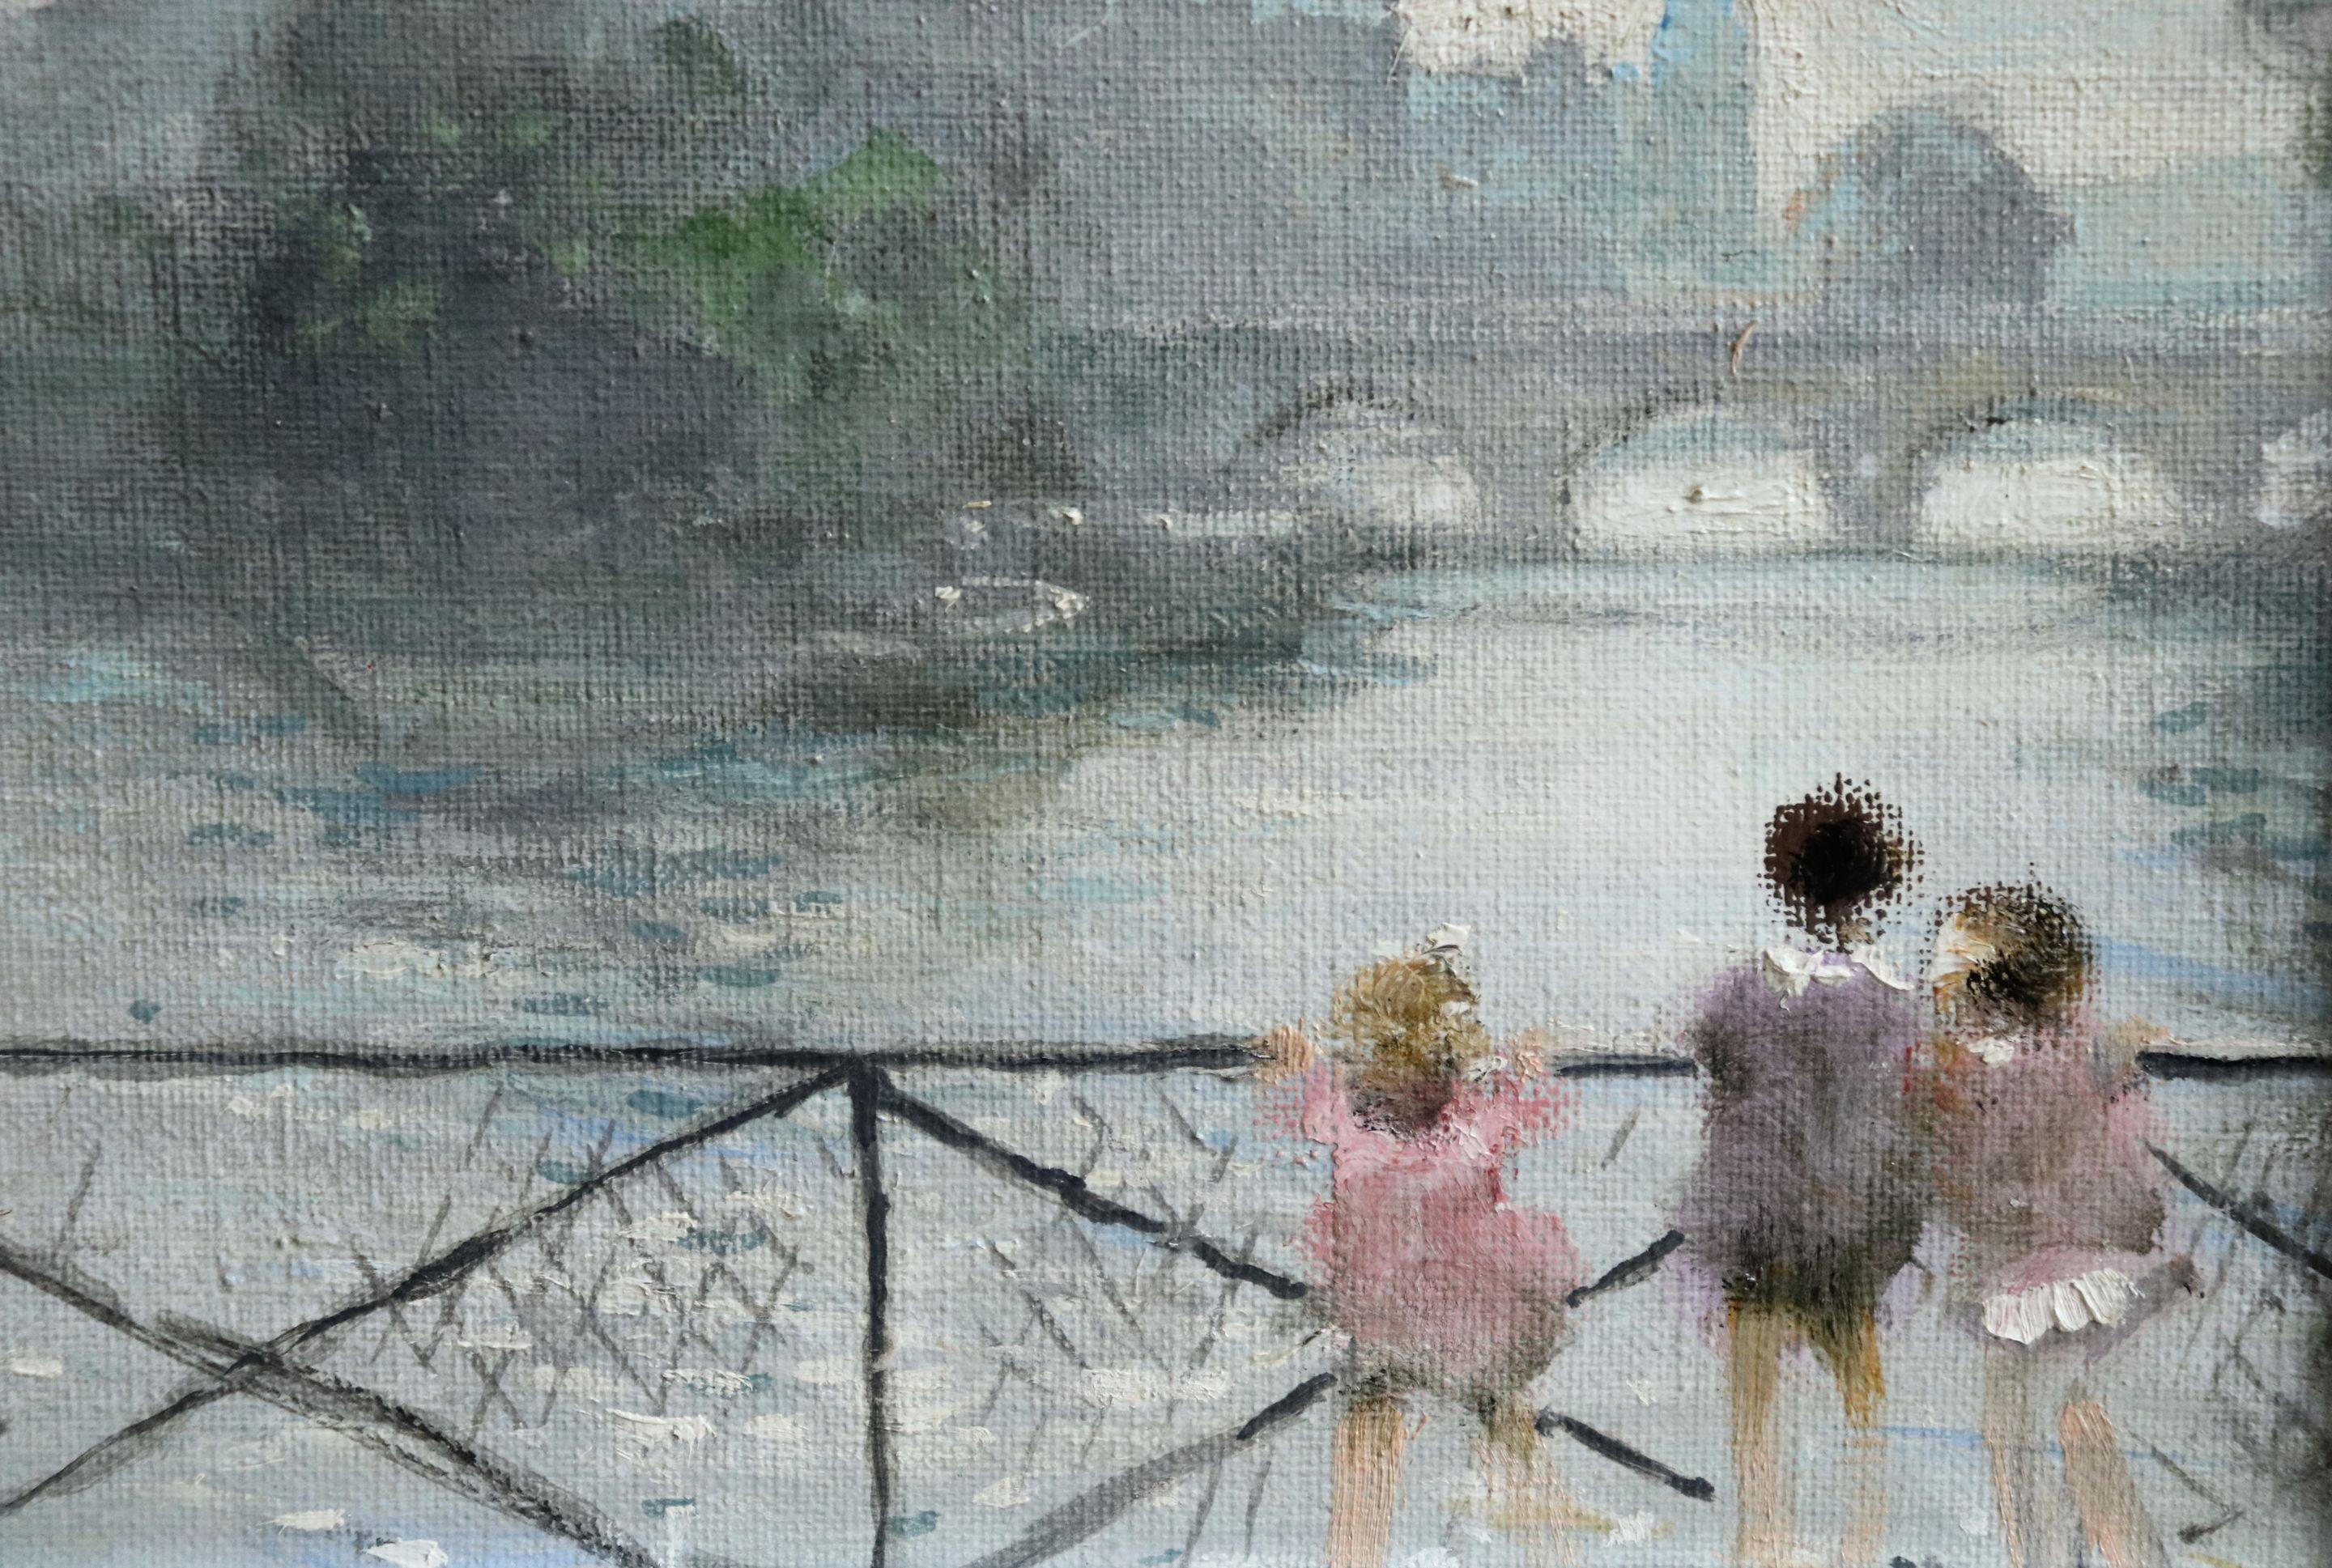 Enfants sur la Seine - 20th Century Oil, Children by River Landscape by J Herve - Gray Figurative Painting by Jules René Hervé